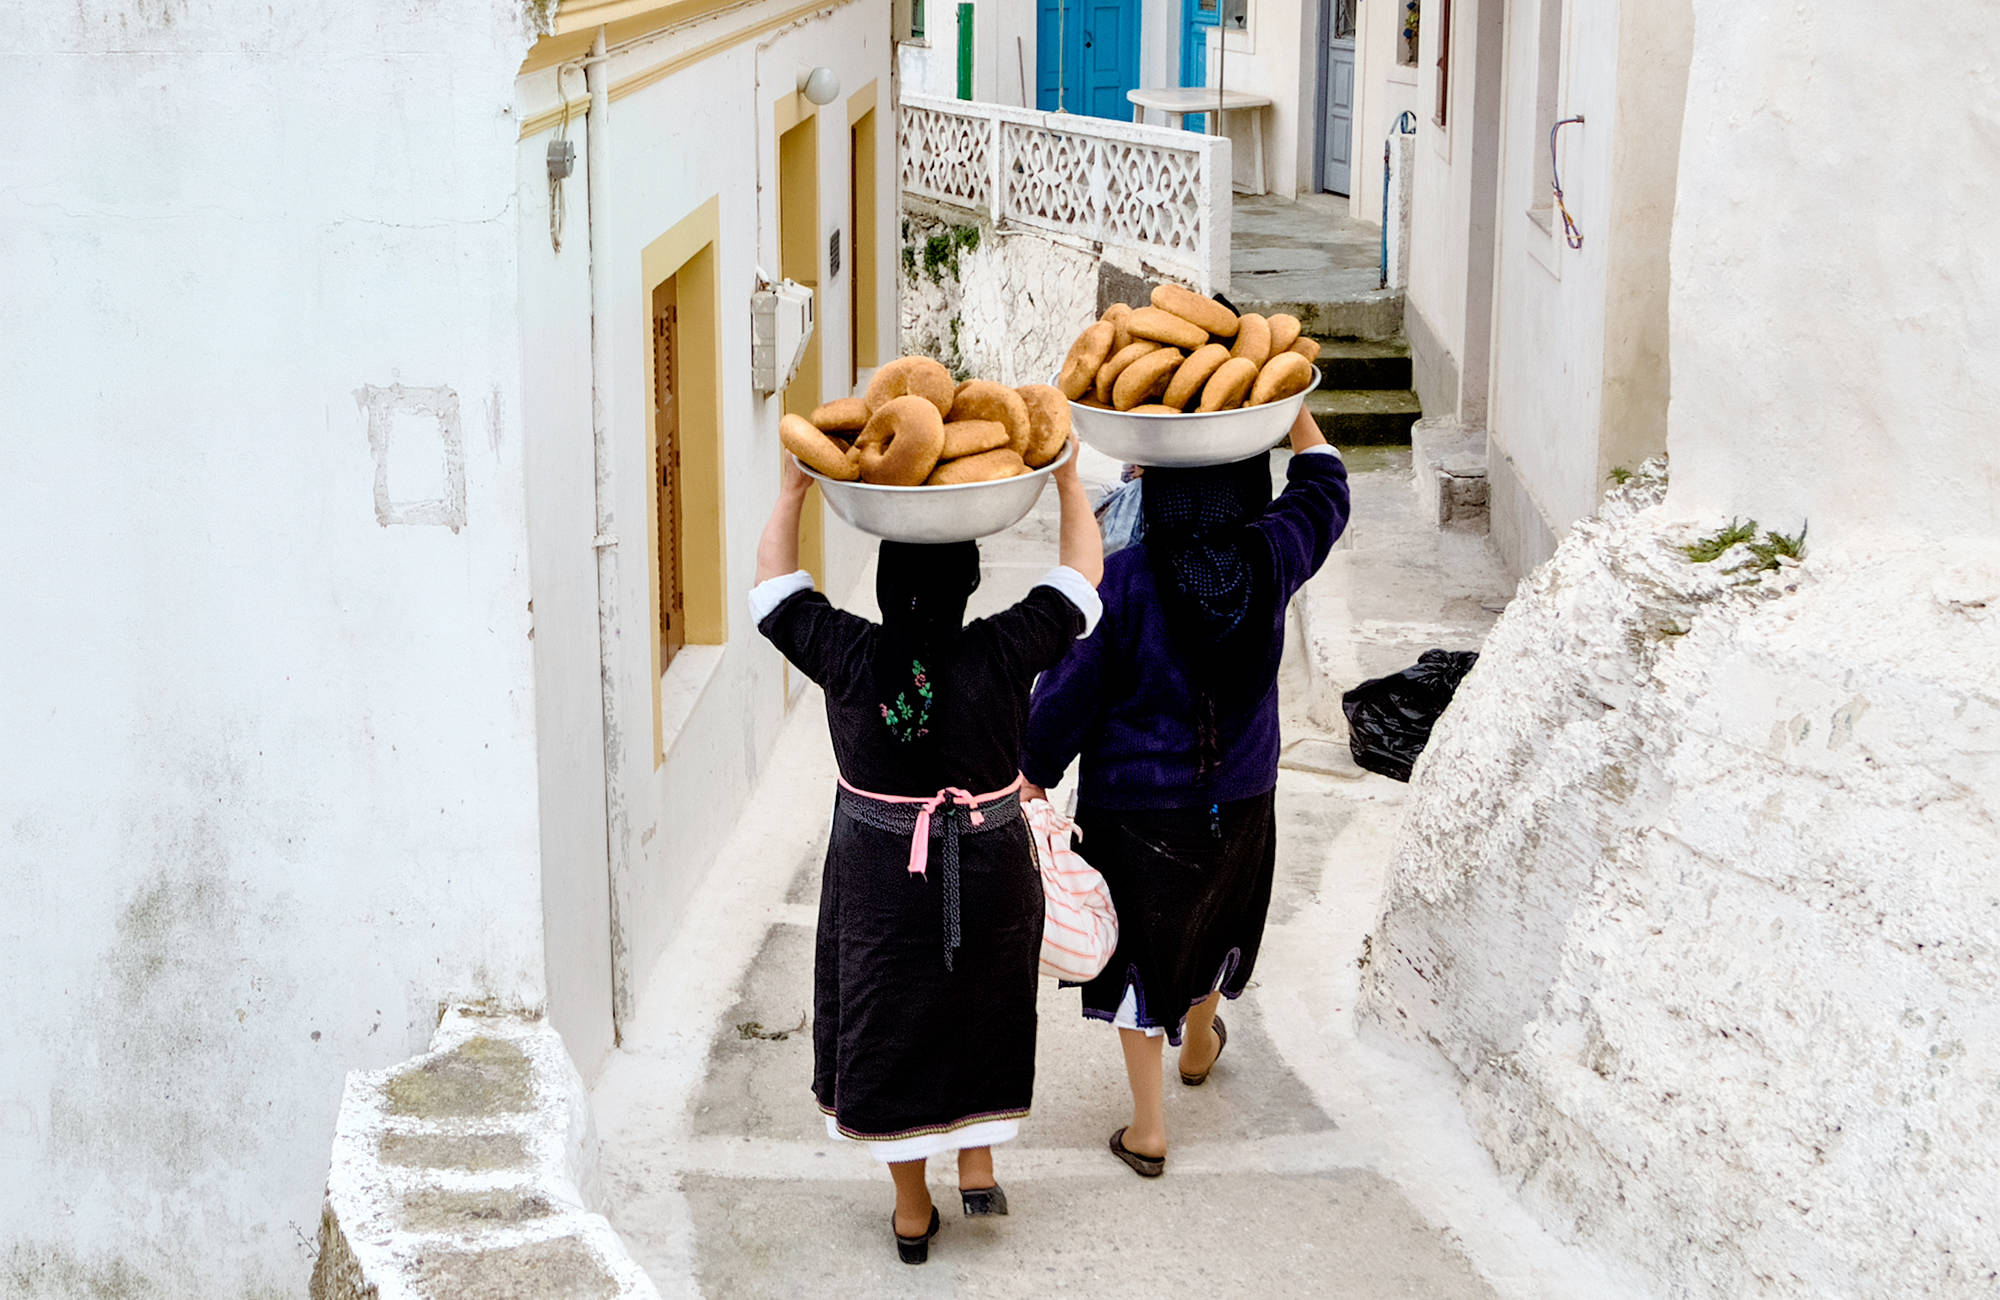 Två kvinnor bär på korgar med bröd i Grekland.